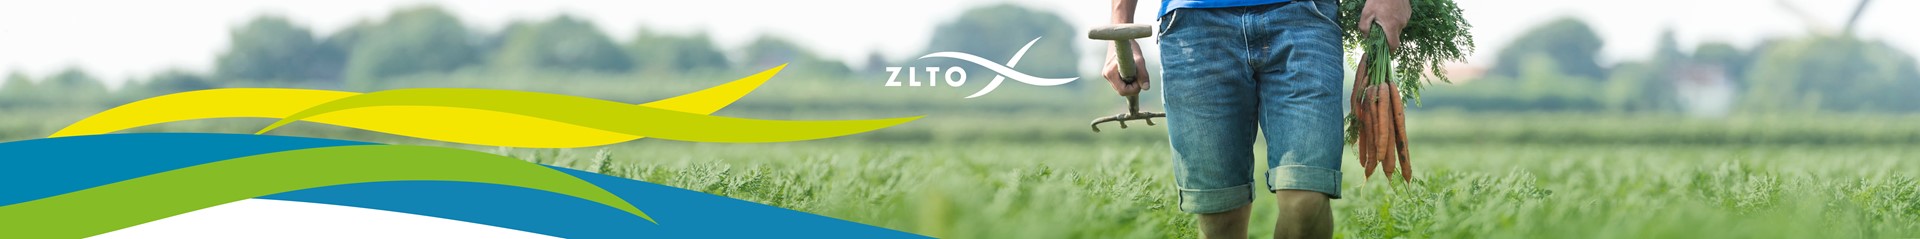 20190213 ZLTO congres basis web